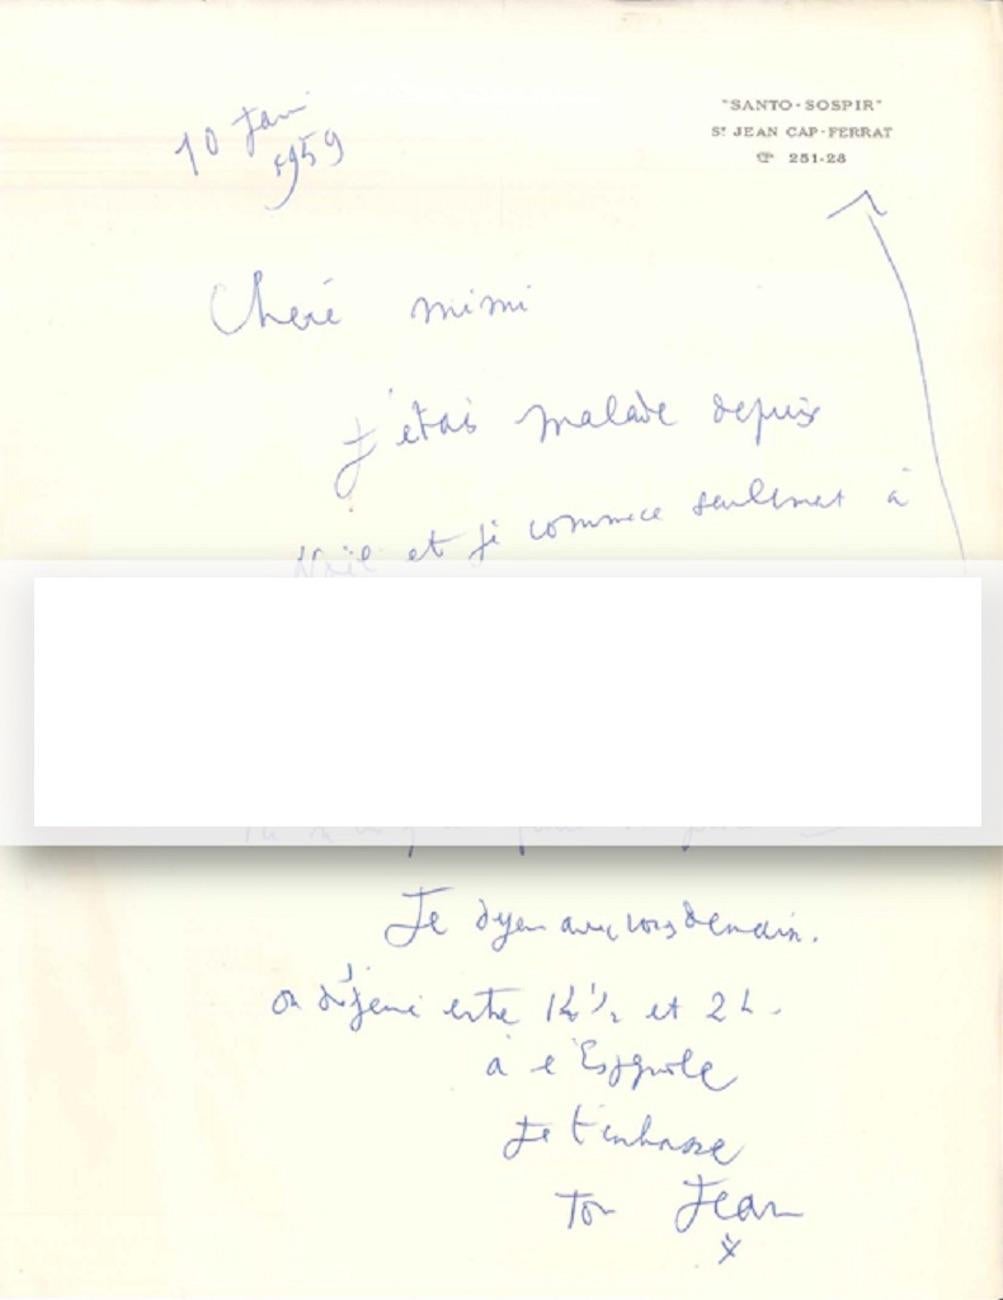 Autograph Letter by Cocteau - 1959 - Art by Jean Cocteau